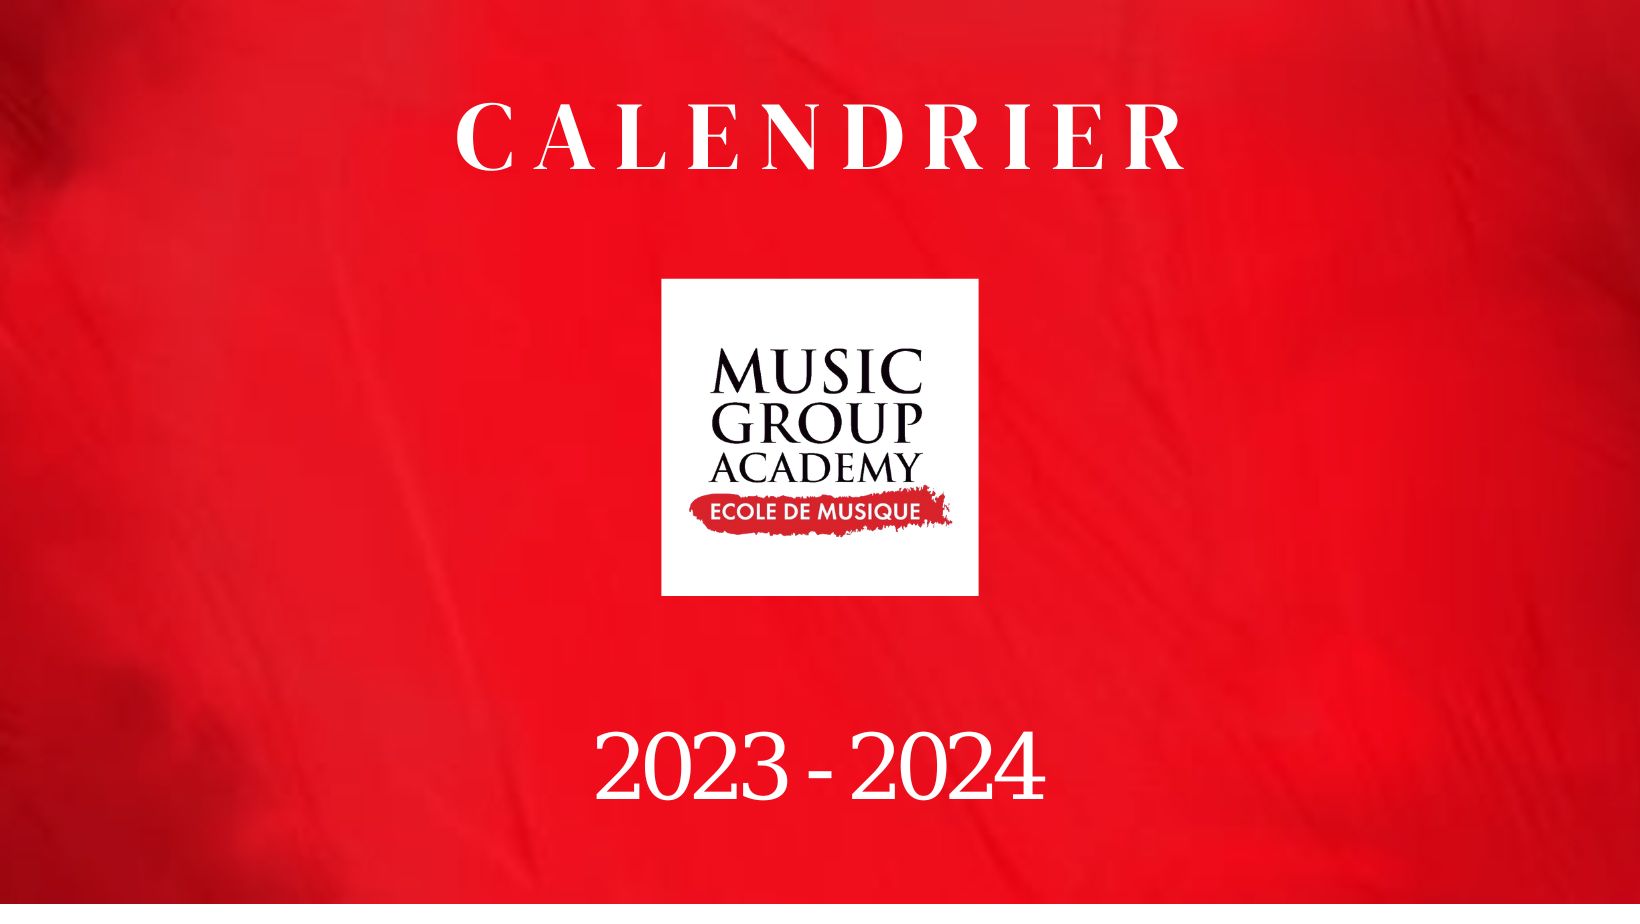 Calendrier des Événements Music Group Academy 2023-2024